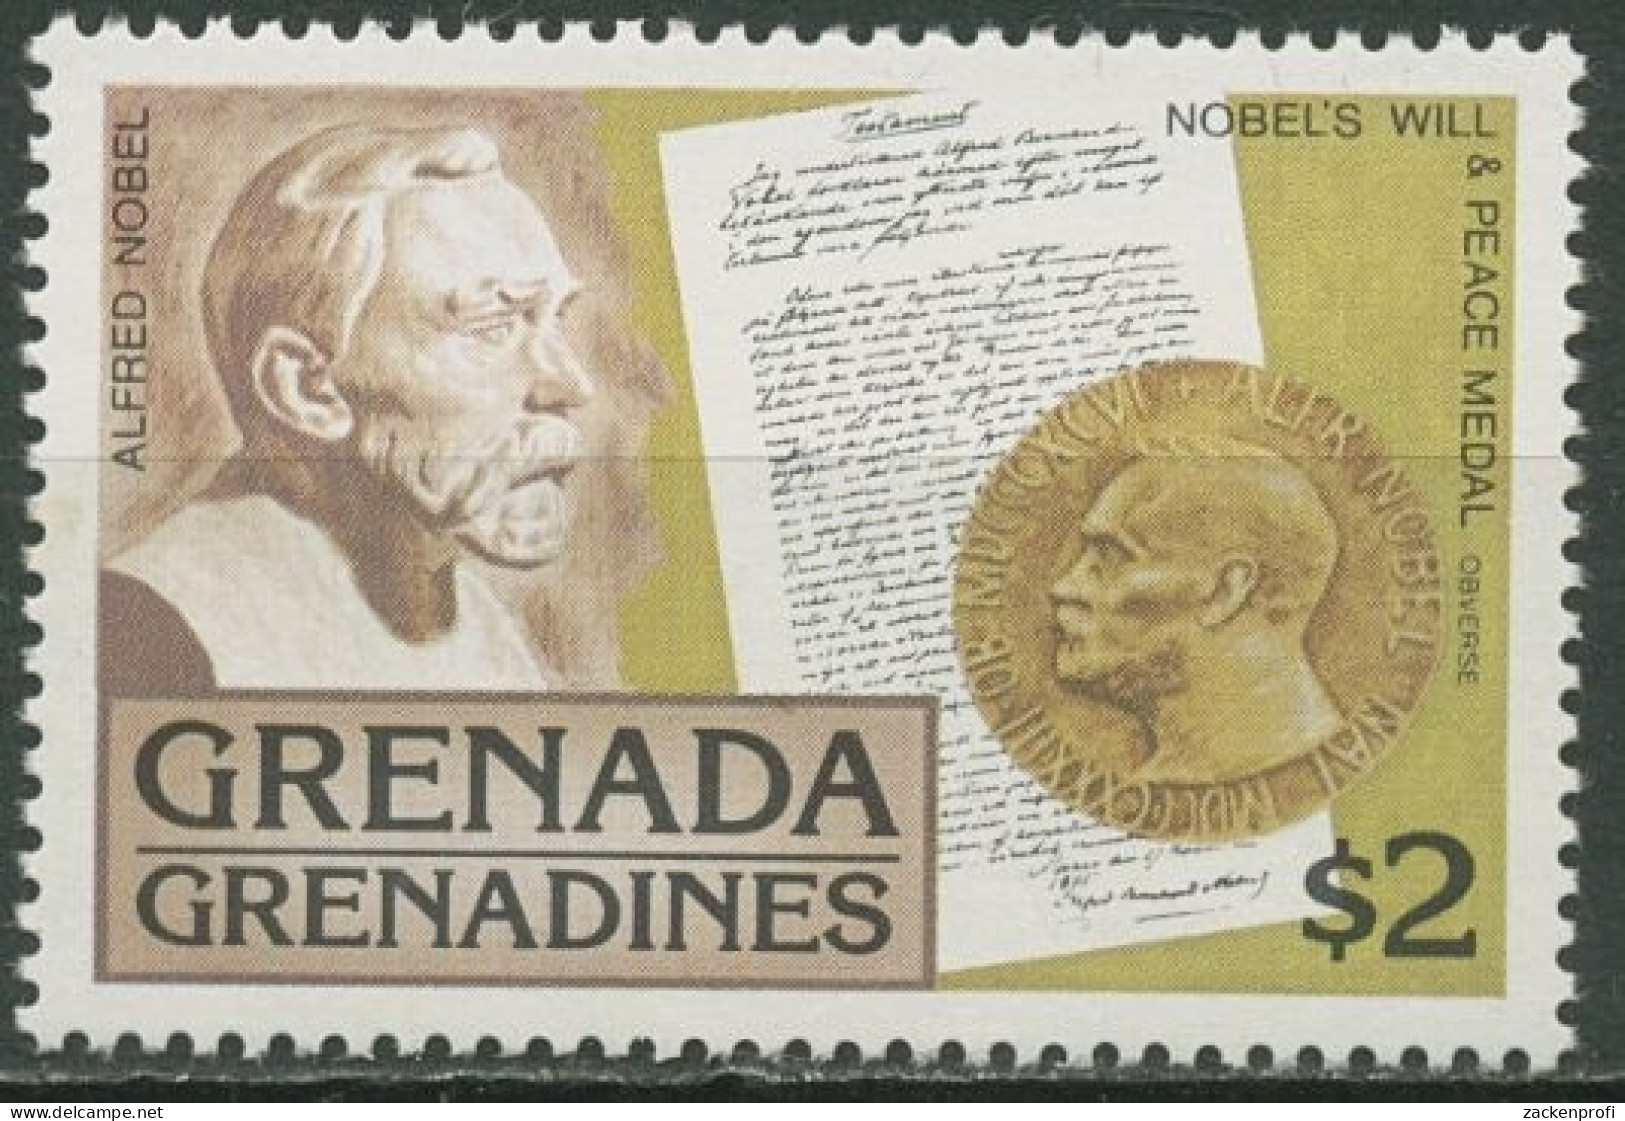 Grenada-Grenadinen 1978 Alfred Nobel 266 Blockeinzelmarke Postfrisch - Grenade (1974-...)